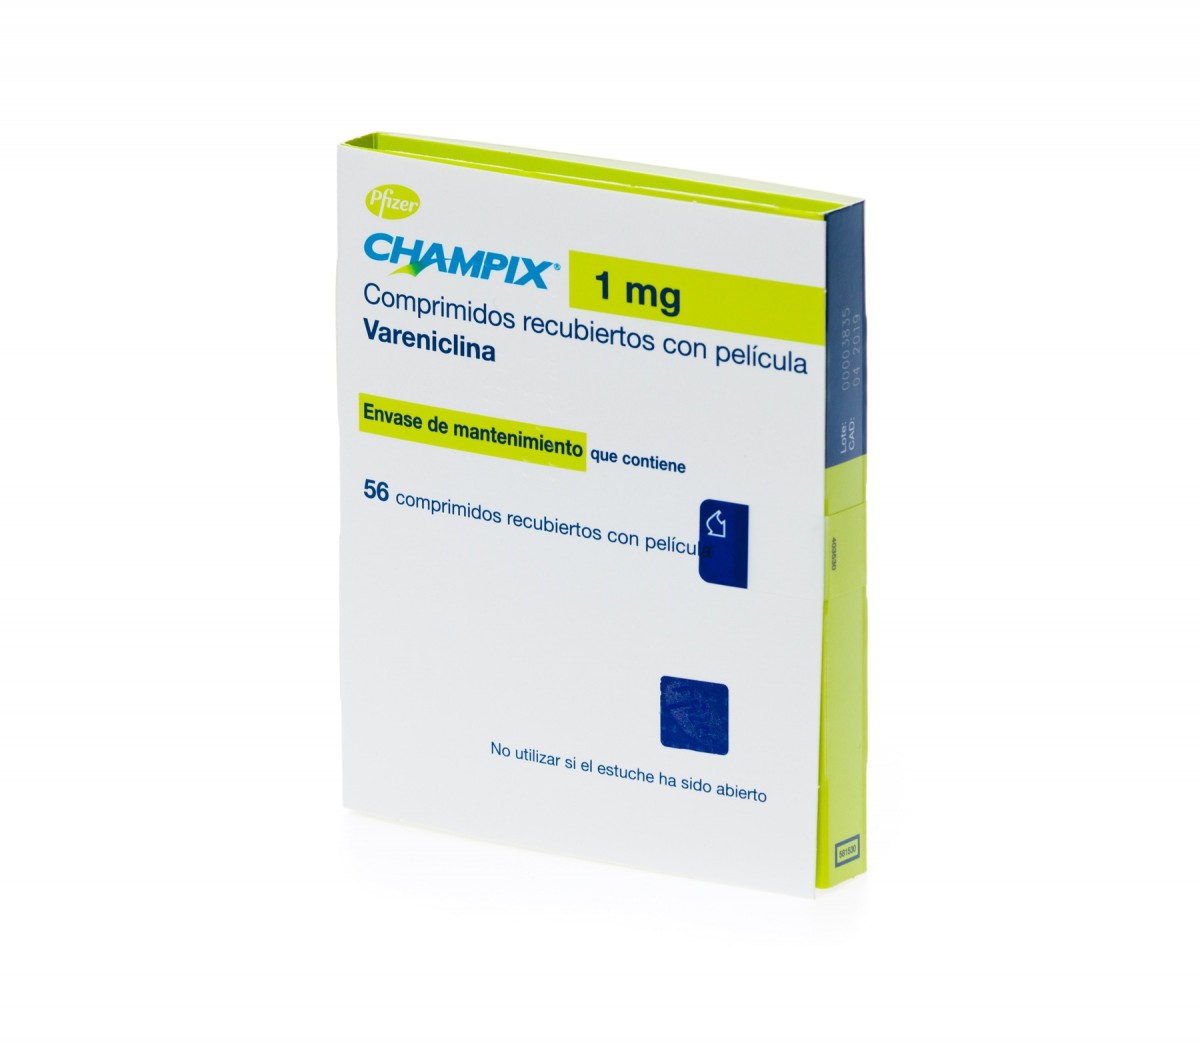 CHAMPIX 1 mg comprimidos recubiertos con pelicula 56 comprimidos fotografía del envase.